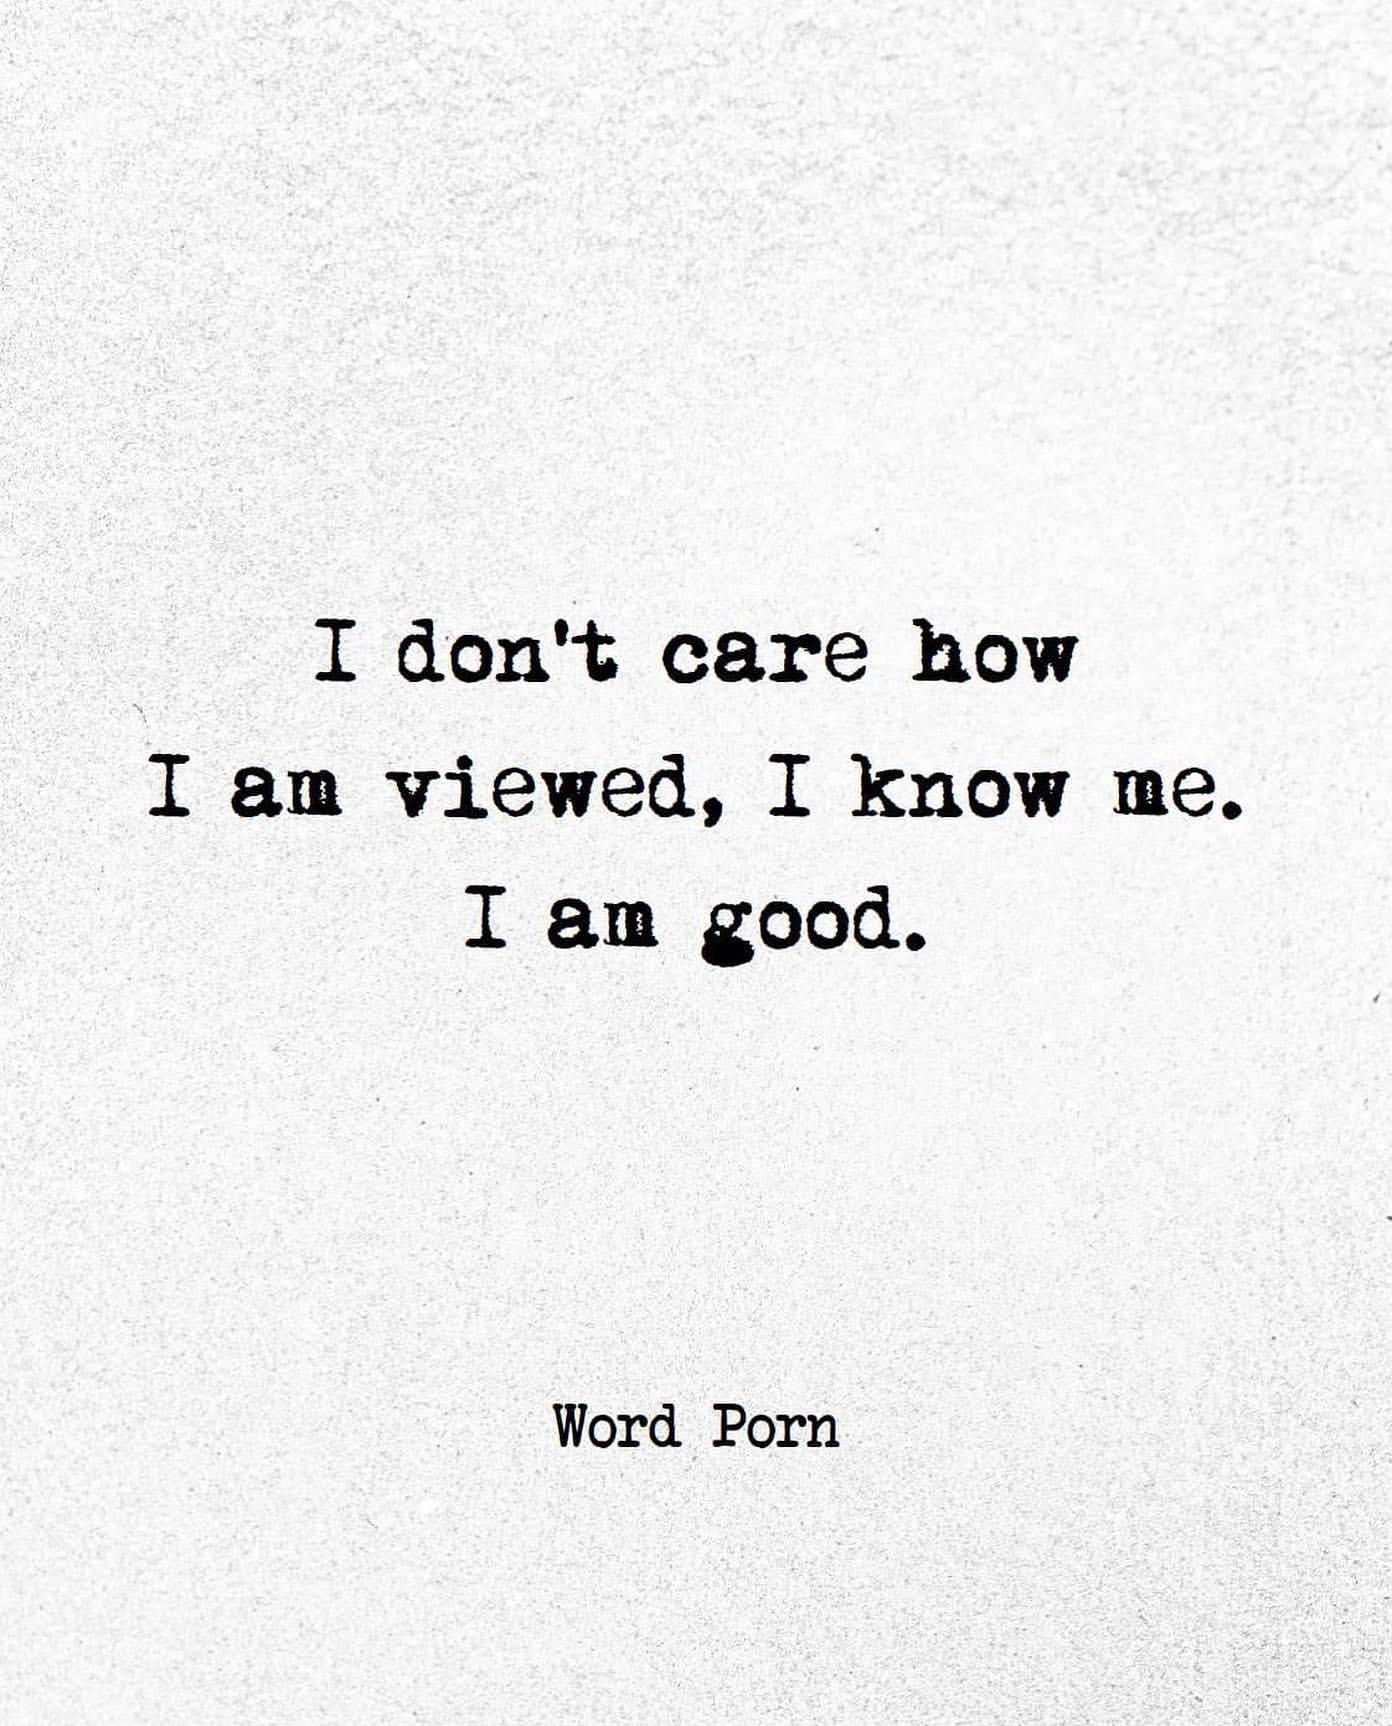 I don't care how I am viewed, I know me. I am good.